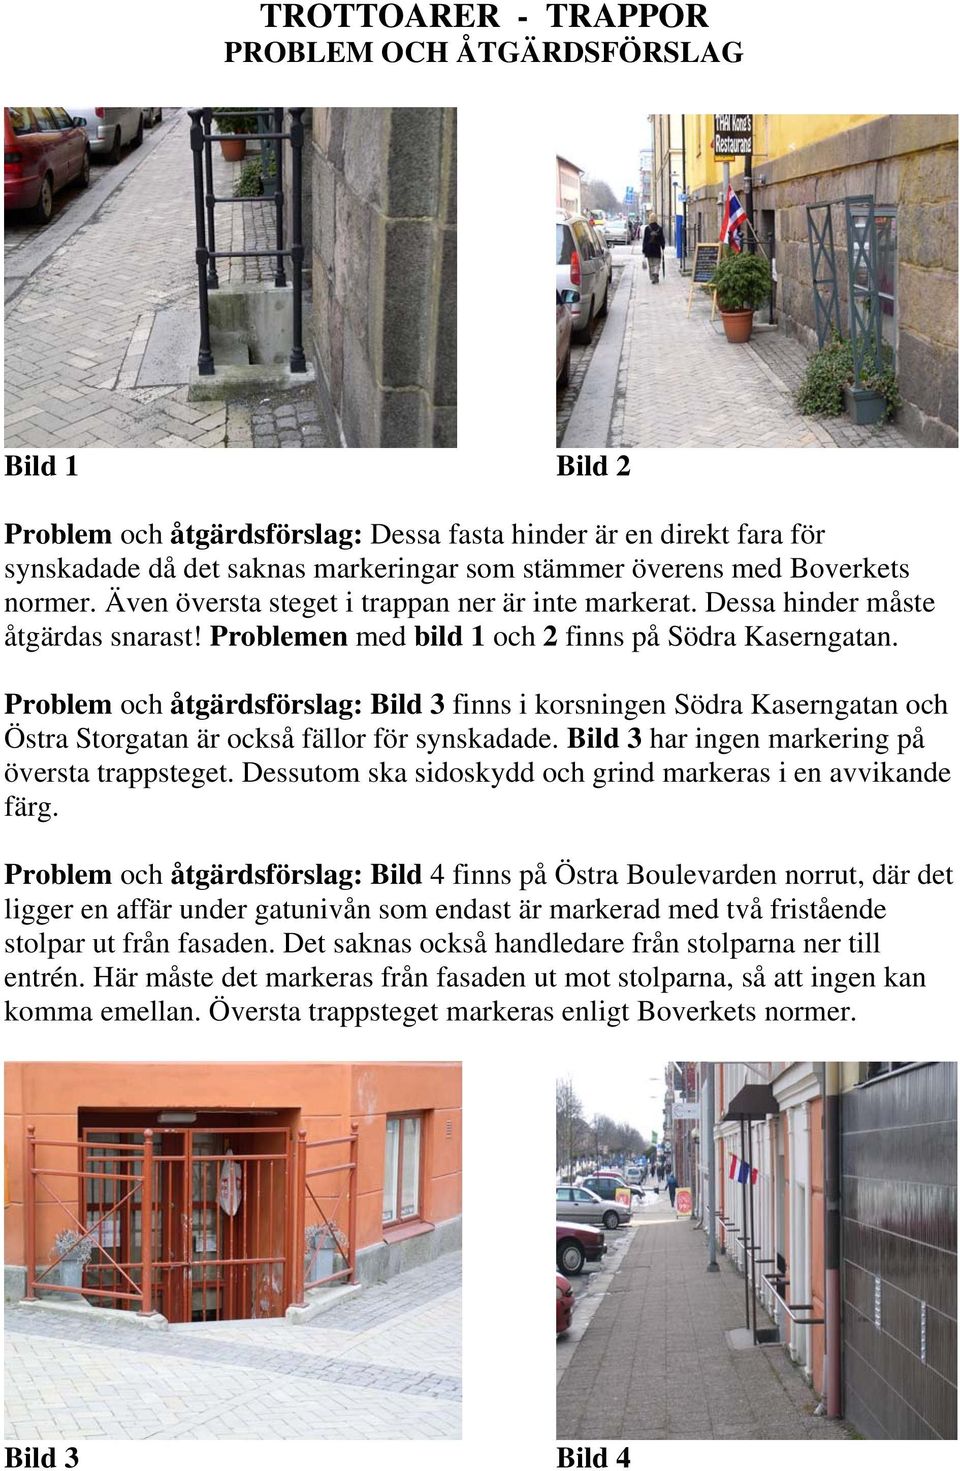 Problem och åtgärdsförslag: Bild 3 finns i korsningen Södra Kaserngatan och Östra Storgatan är också fällor för synskadade. Bild 3 har ingen markering på översta trappsteget.